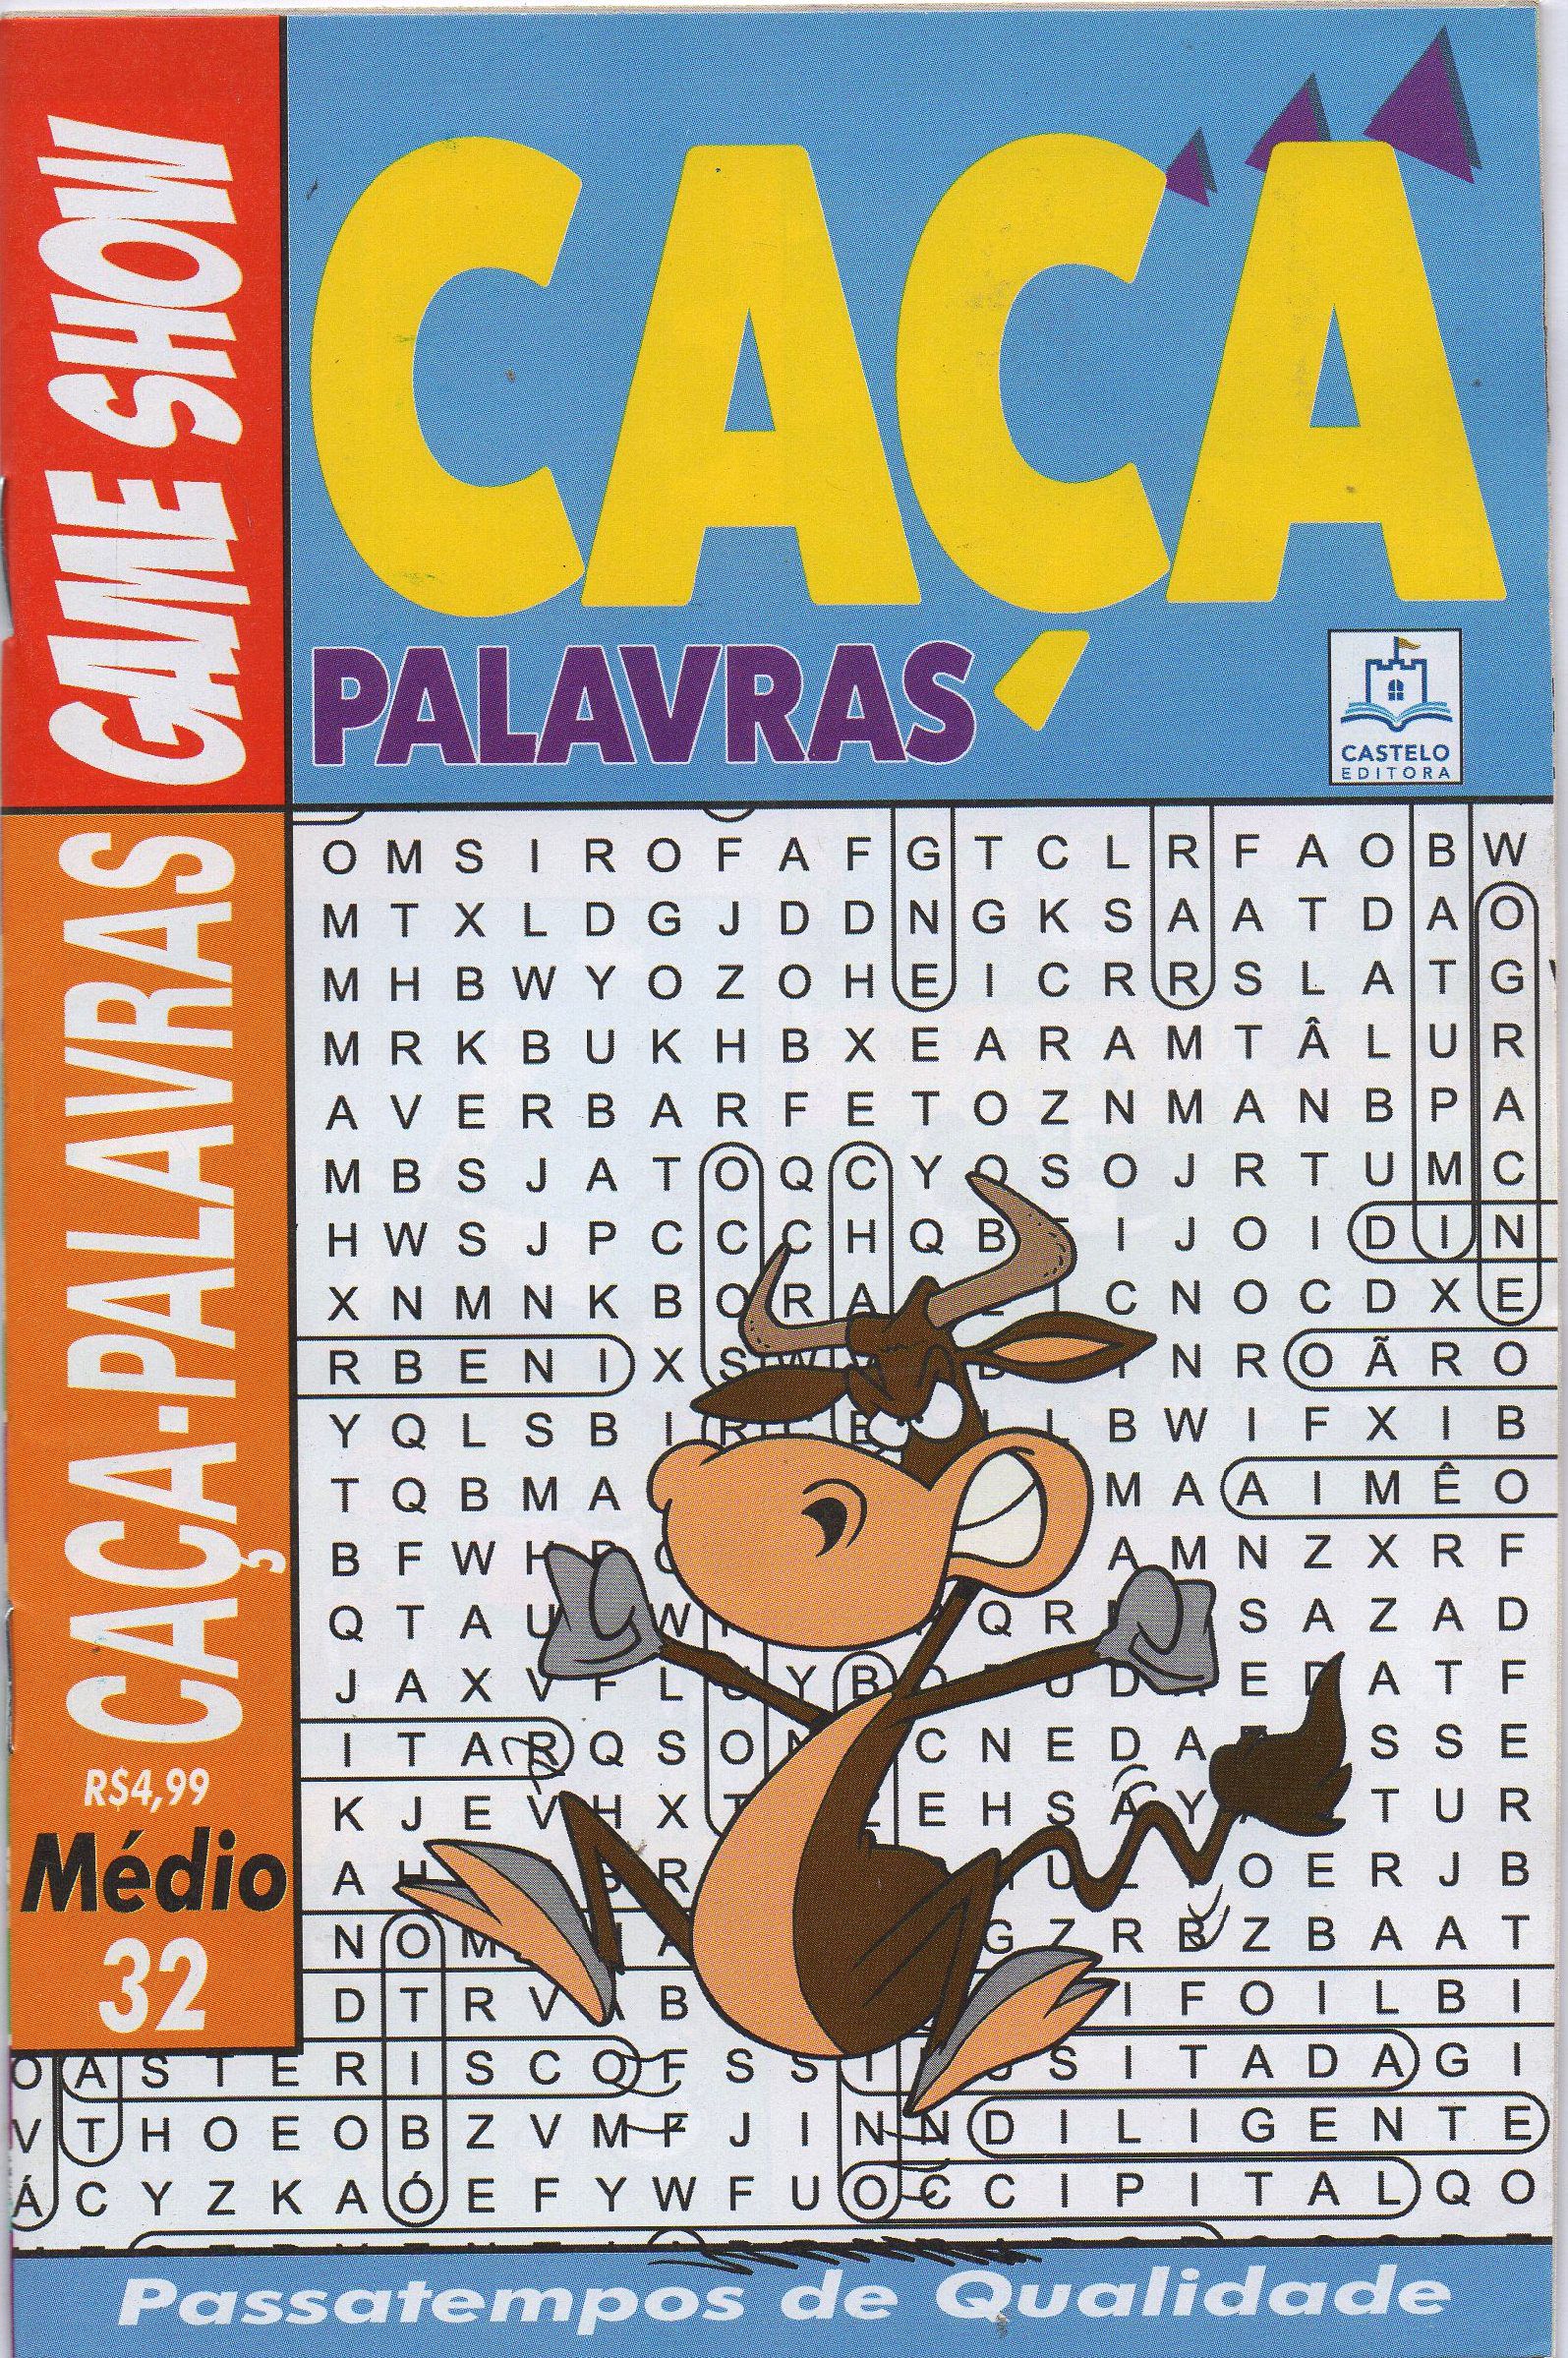 CAÇA PALAVRA GAME SHOW (NIVEL MEDIO) ED.32 - revistaria nova cultura